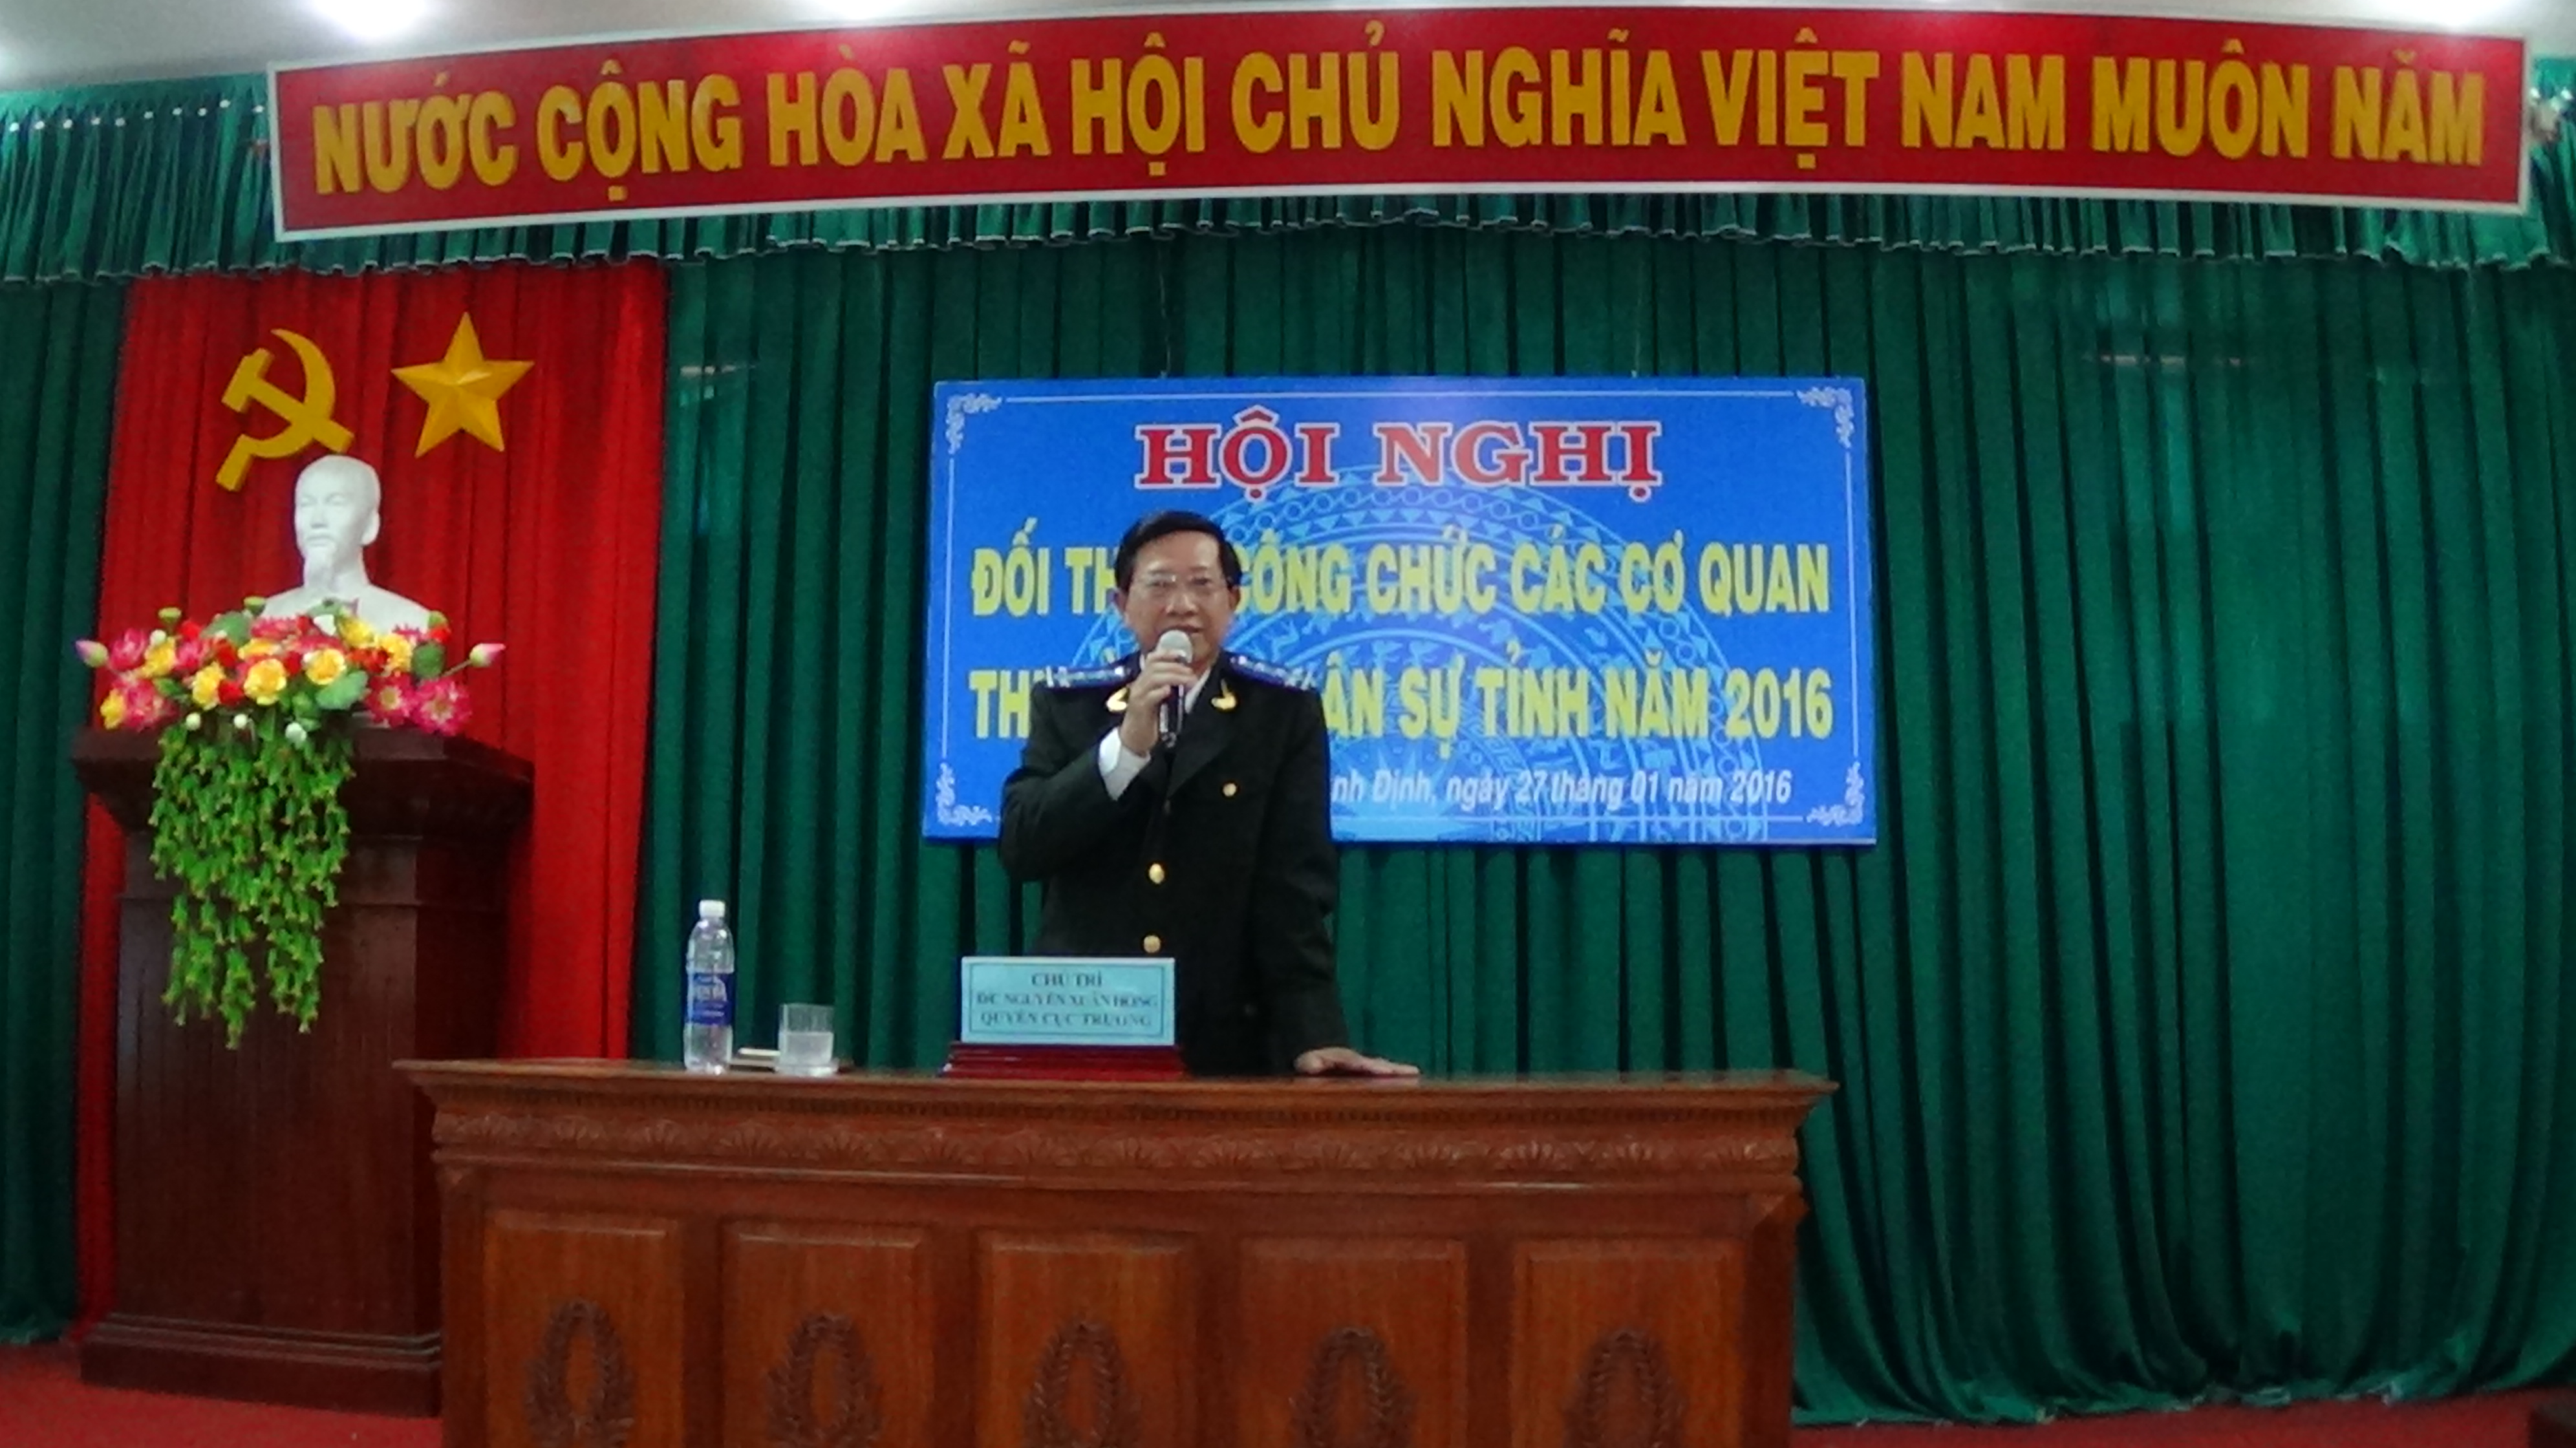 Cục Thi hành án dân sự tỉnh Bình Định tổ chức Hội nghị đối thoại công chức các cơ quan THADS tỉnh năm 2016